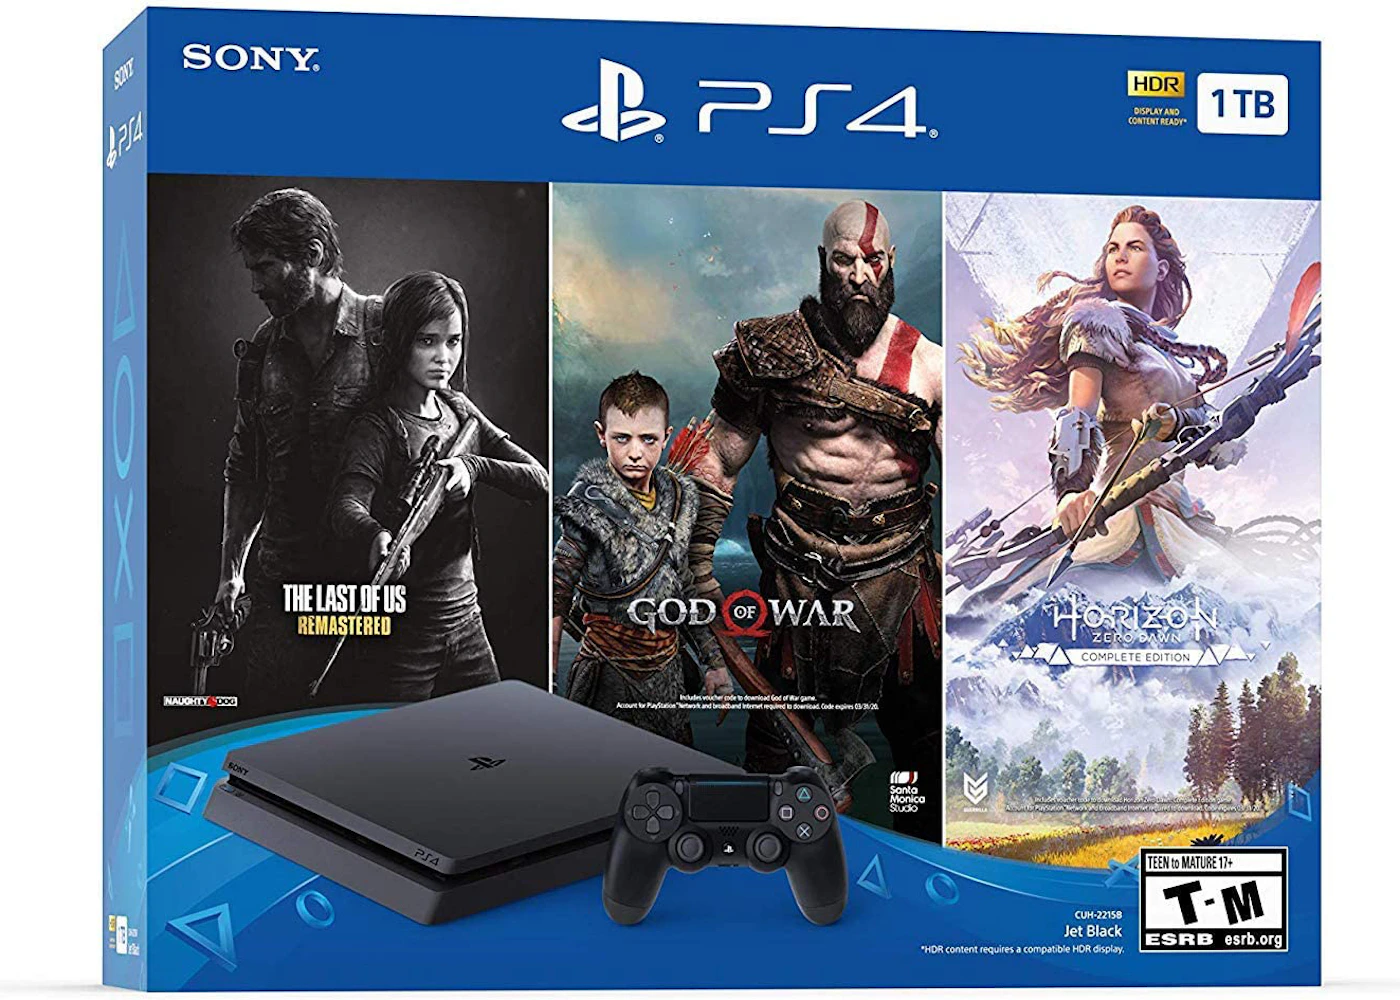 Console Sony Playstation 4 1TB CUH-2215B God Of War Ragnarok no